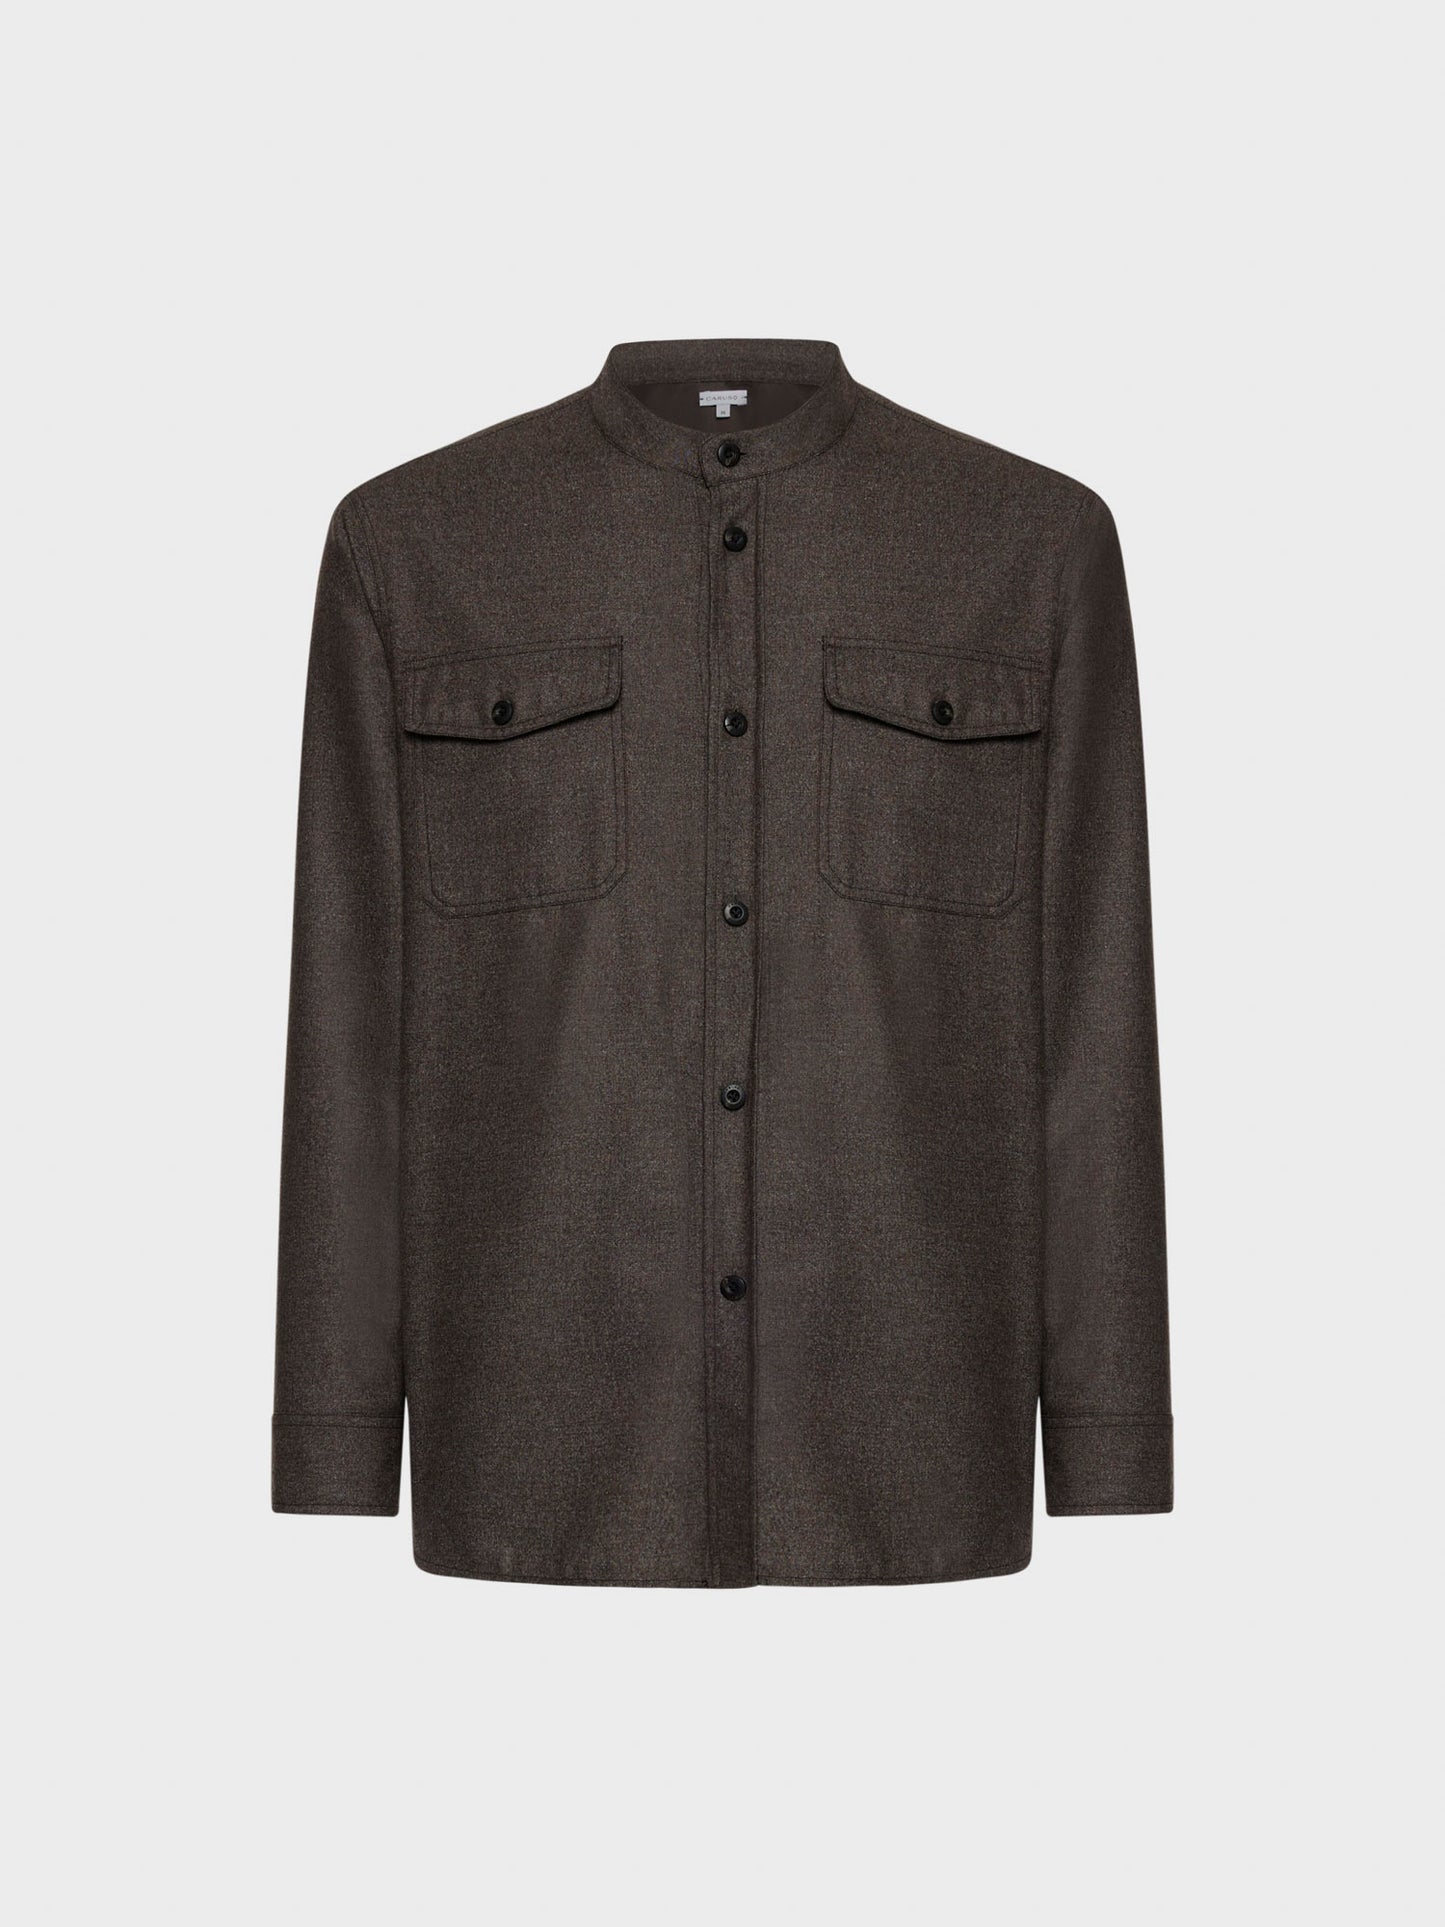 Caruso Menswear Abbigliamento Uomo Overshirt in flanella di lana marrone still